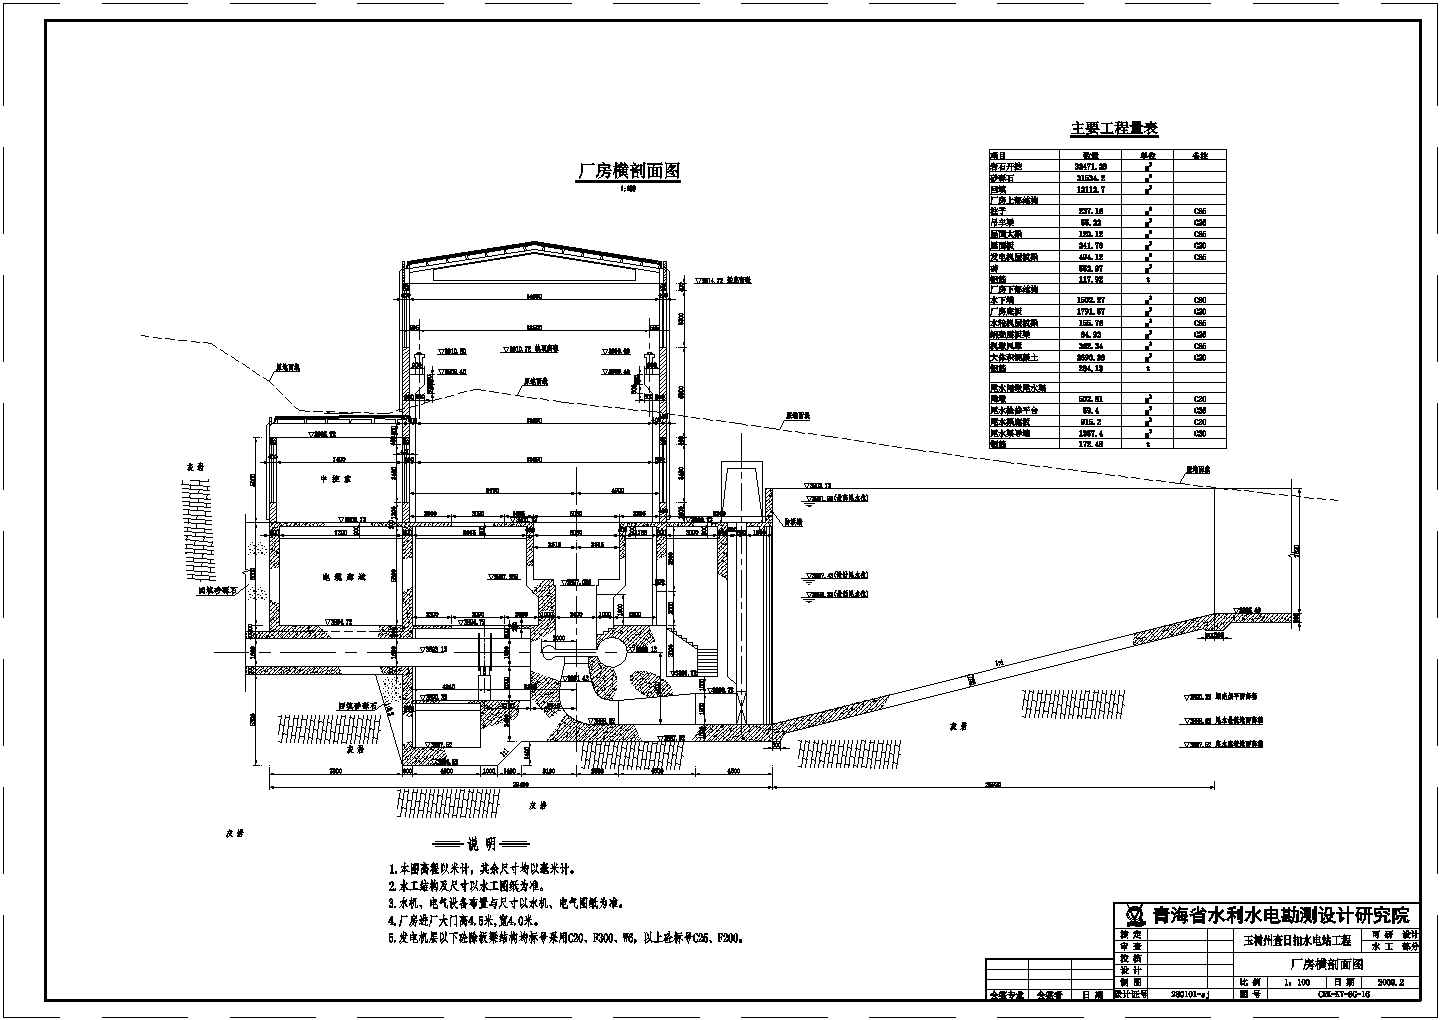 玉树州查日扣水电站工程可研阶段厂房结构布置图